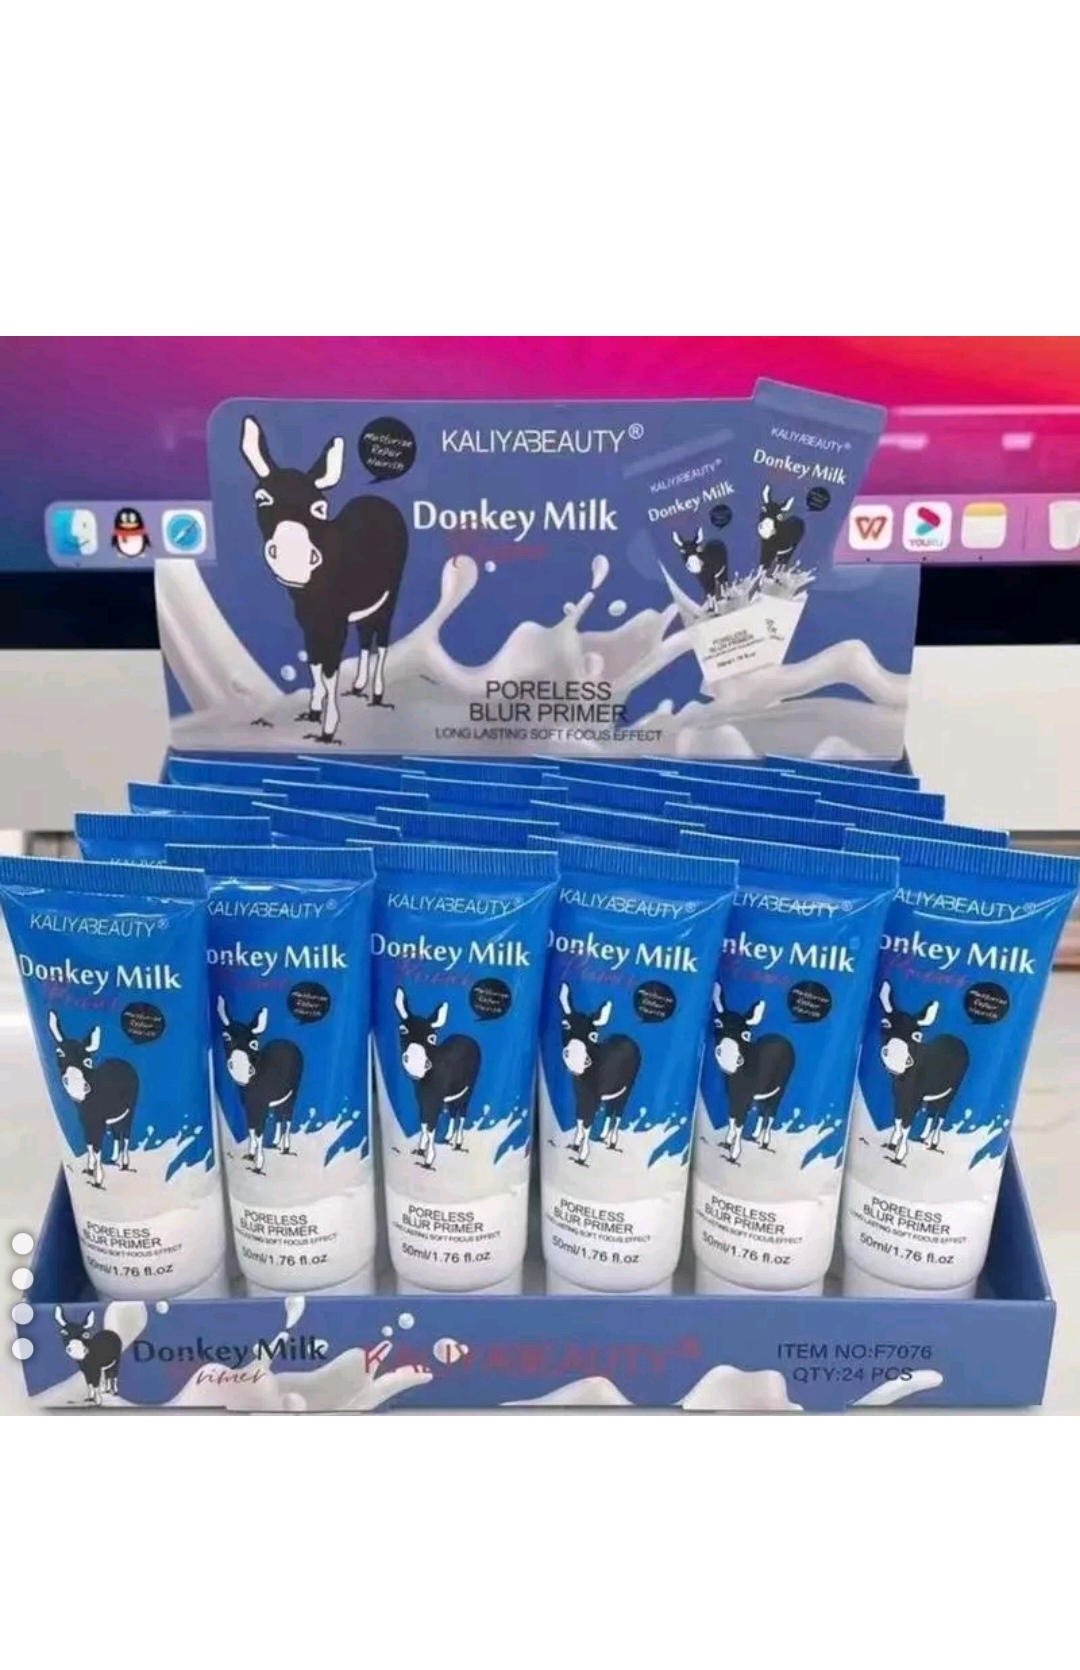 پرایمر شیر الاغ کالیا بیوتی  Kaliya beauy donkey milk primer